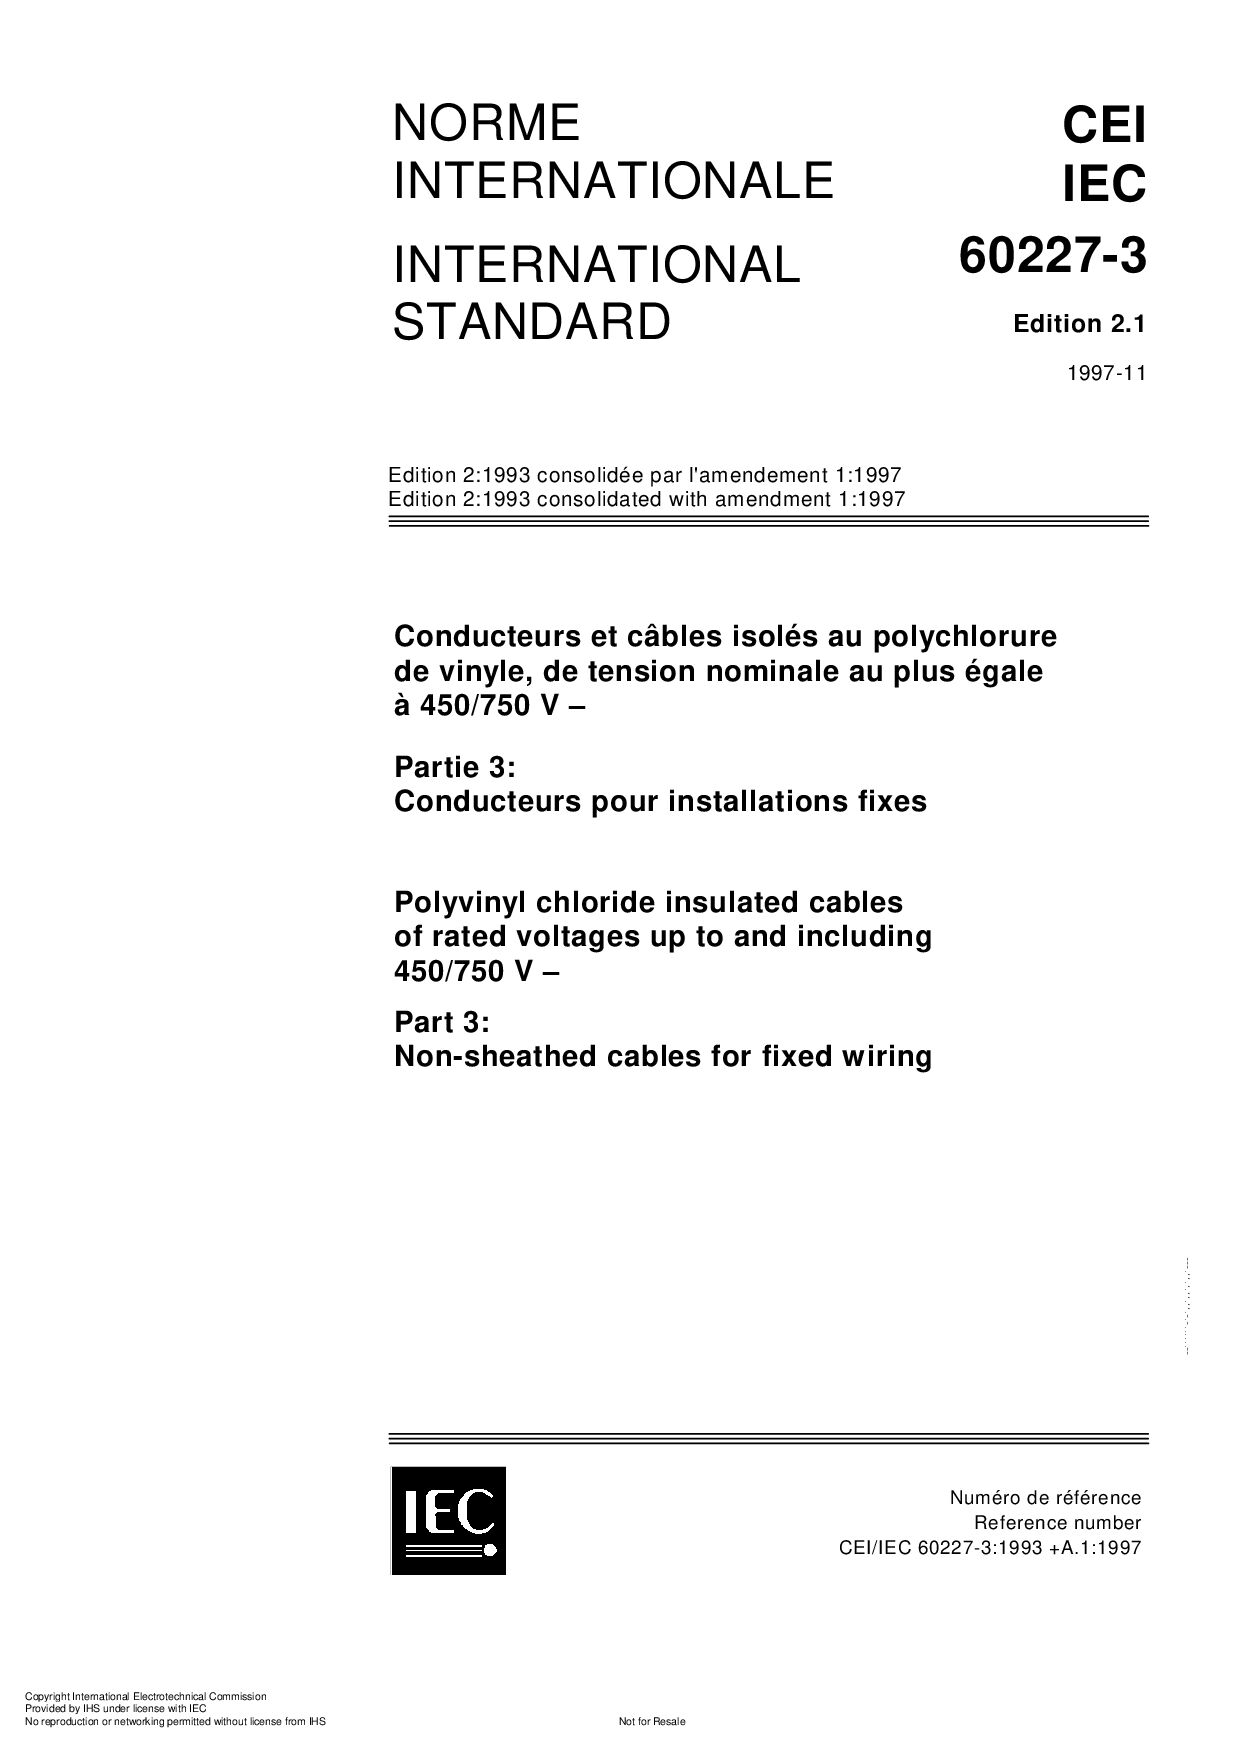 IEC 60227-3:1997封面图